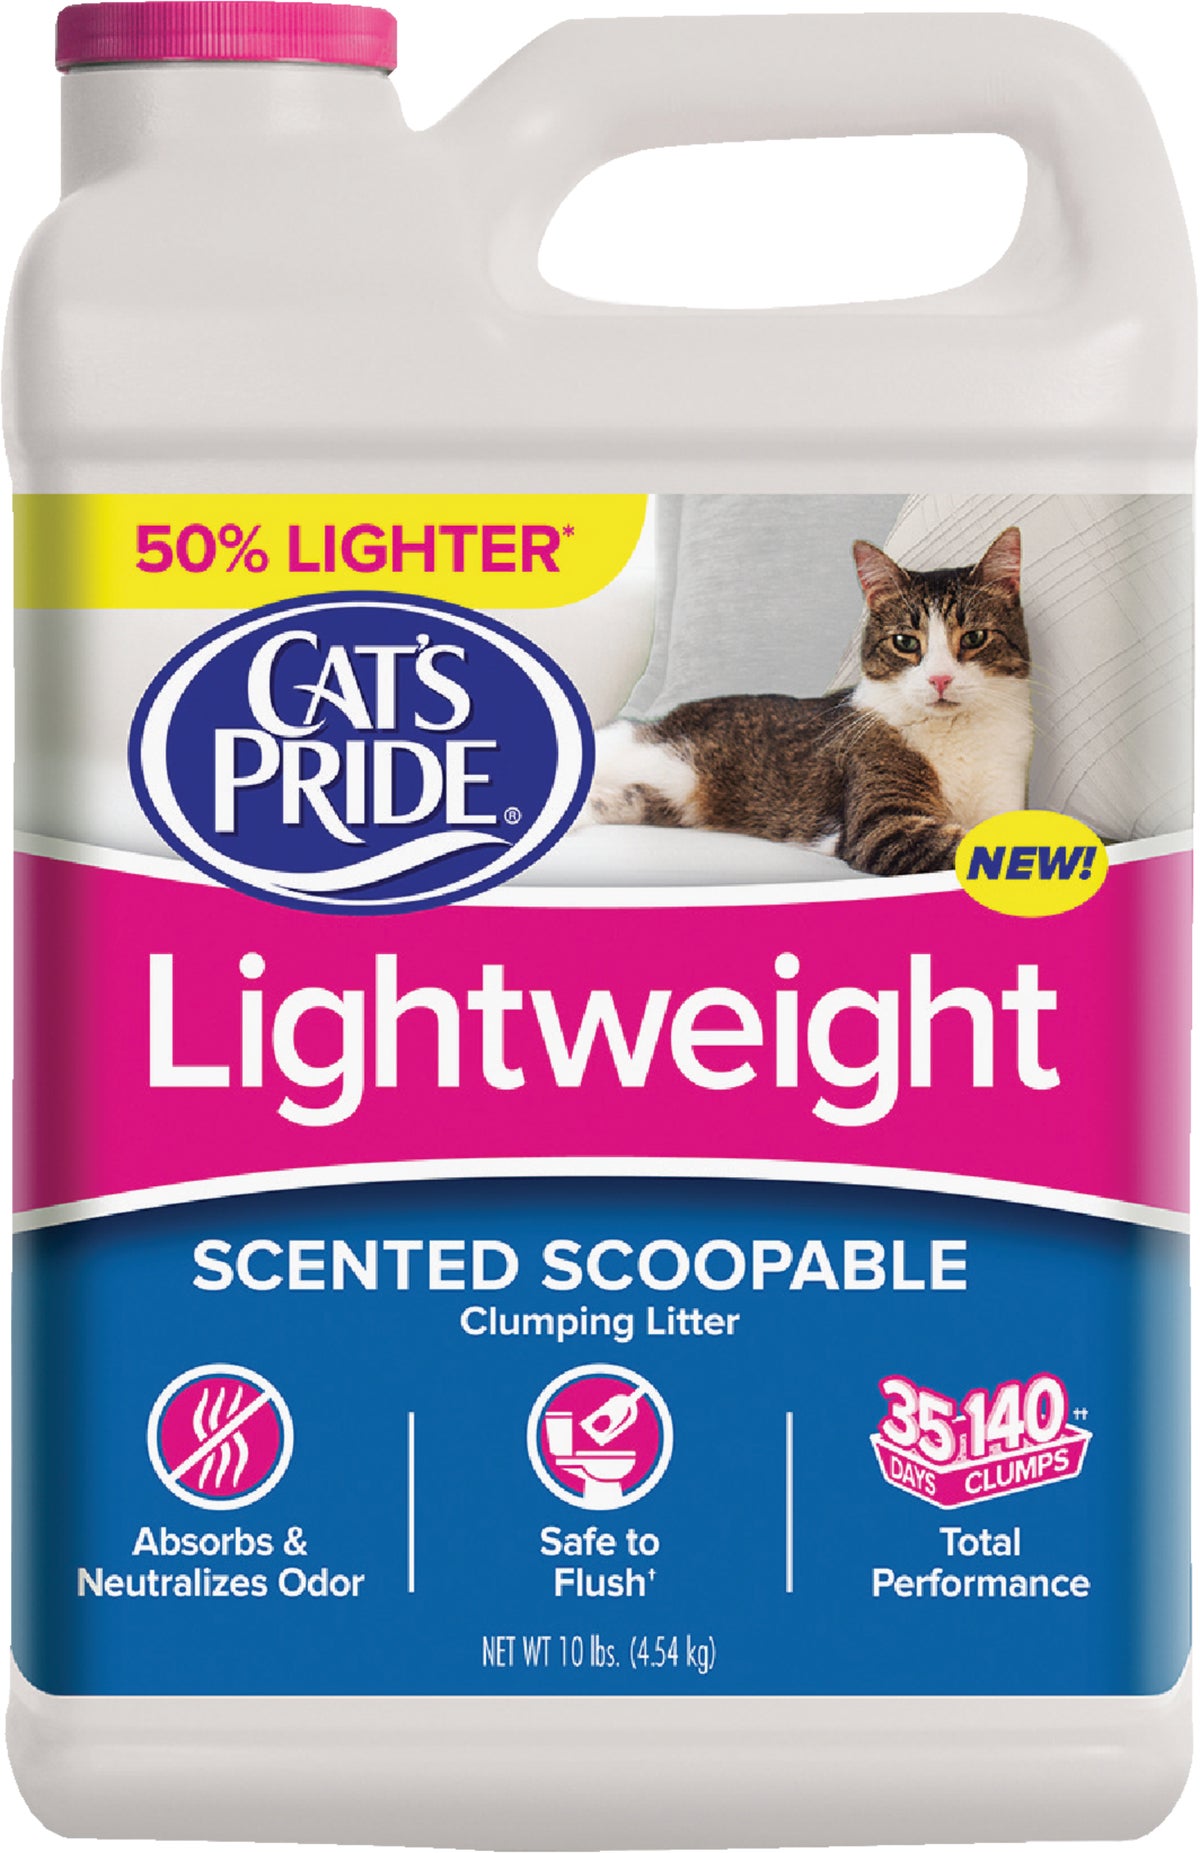 Buy Cat's Pride Lightweight Scoopable Cat Litter